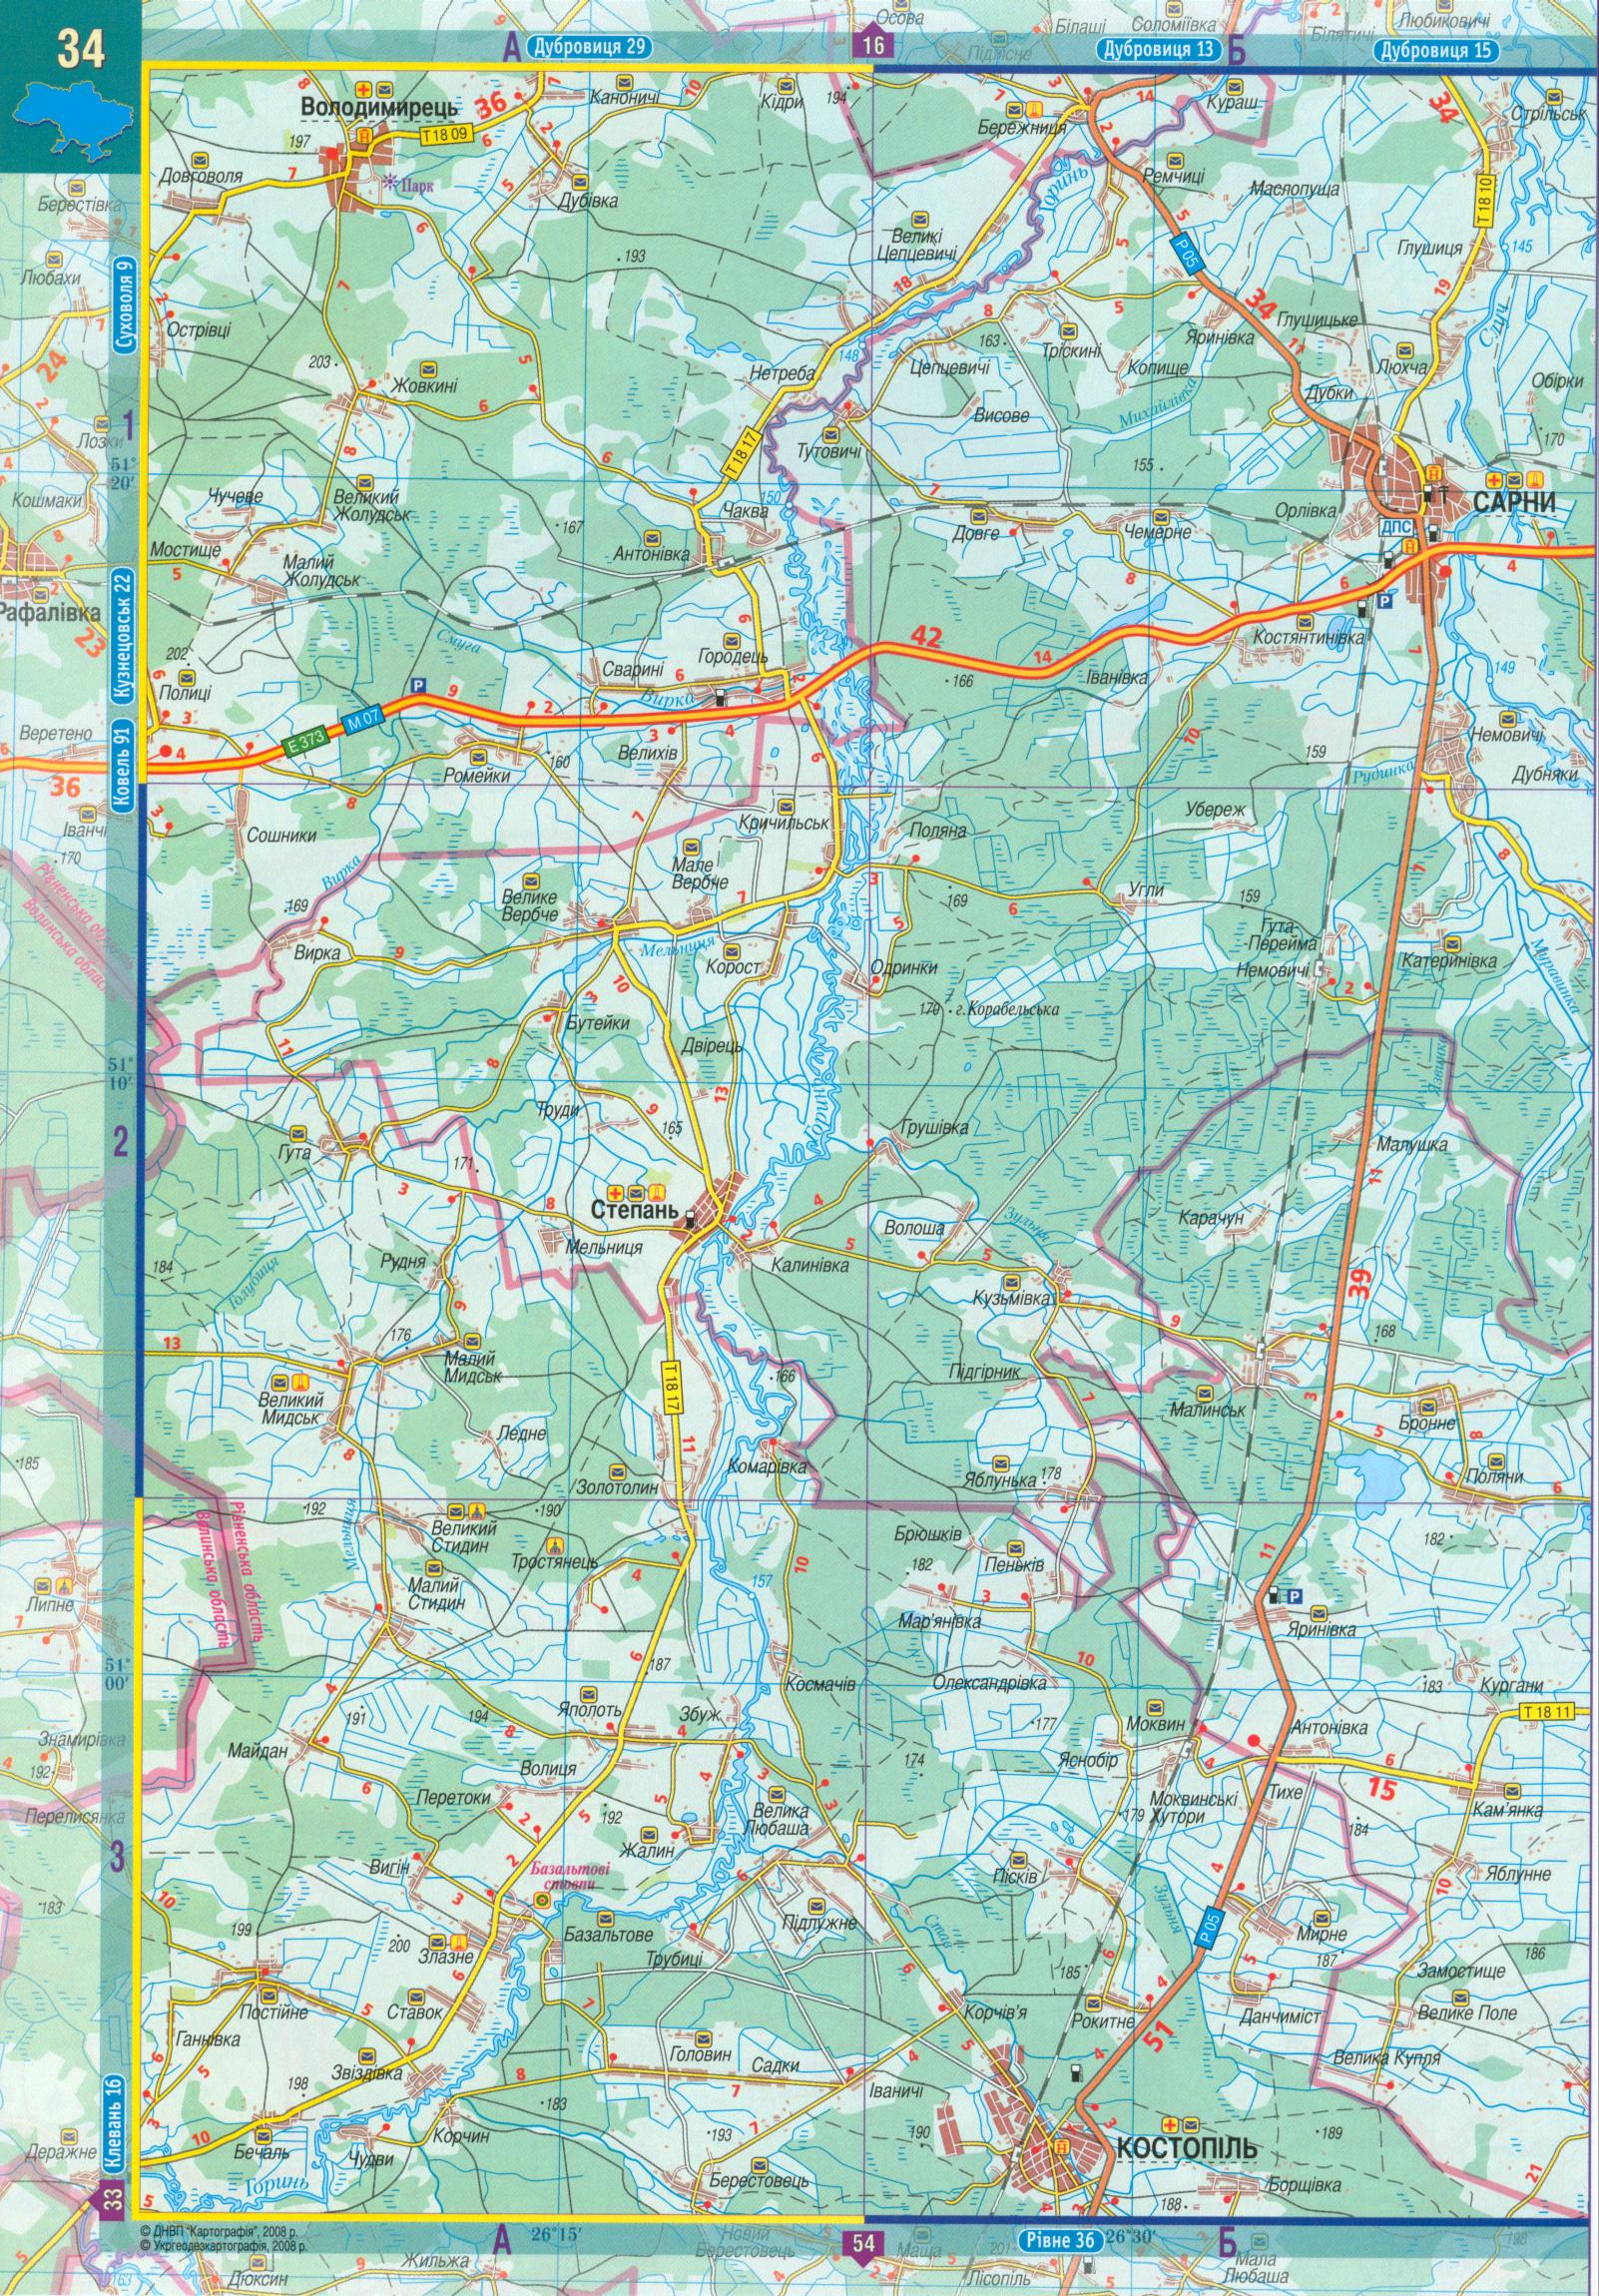 Карта Ровенской области. Автомобильный атлас масштаба 1см:2,5км на украинском - карта Ровенской области, A0 - 